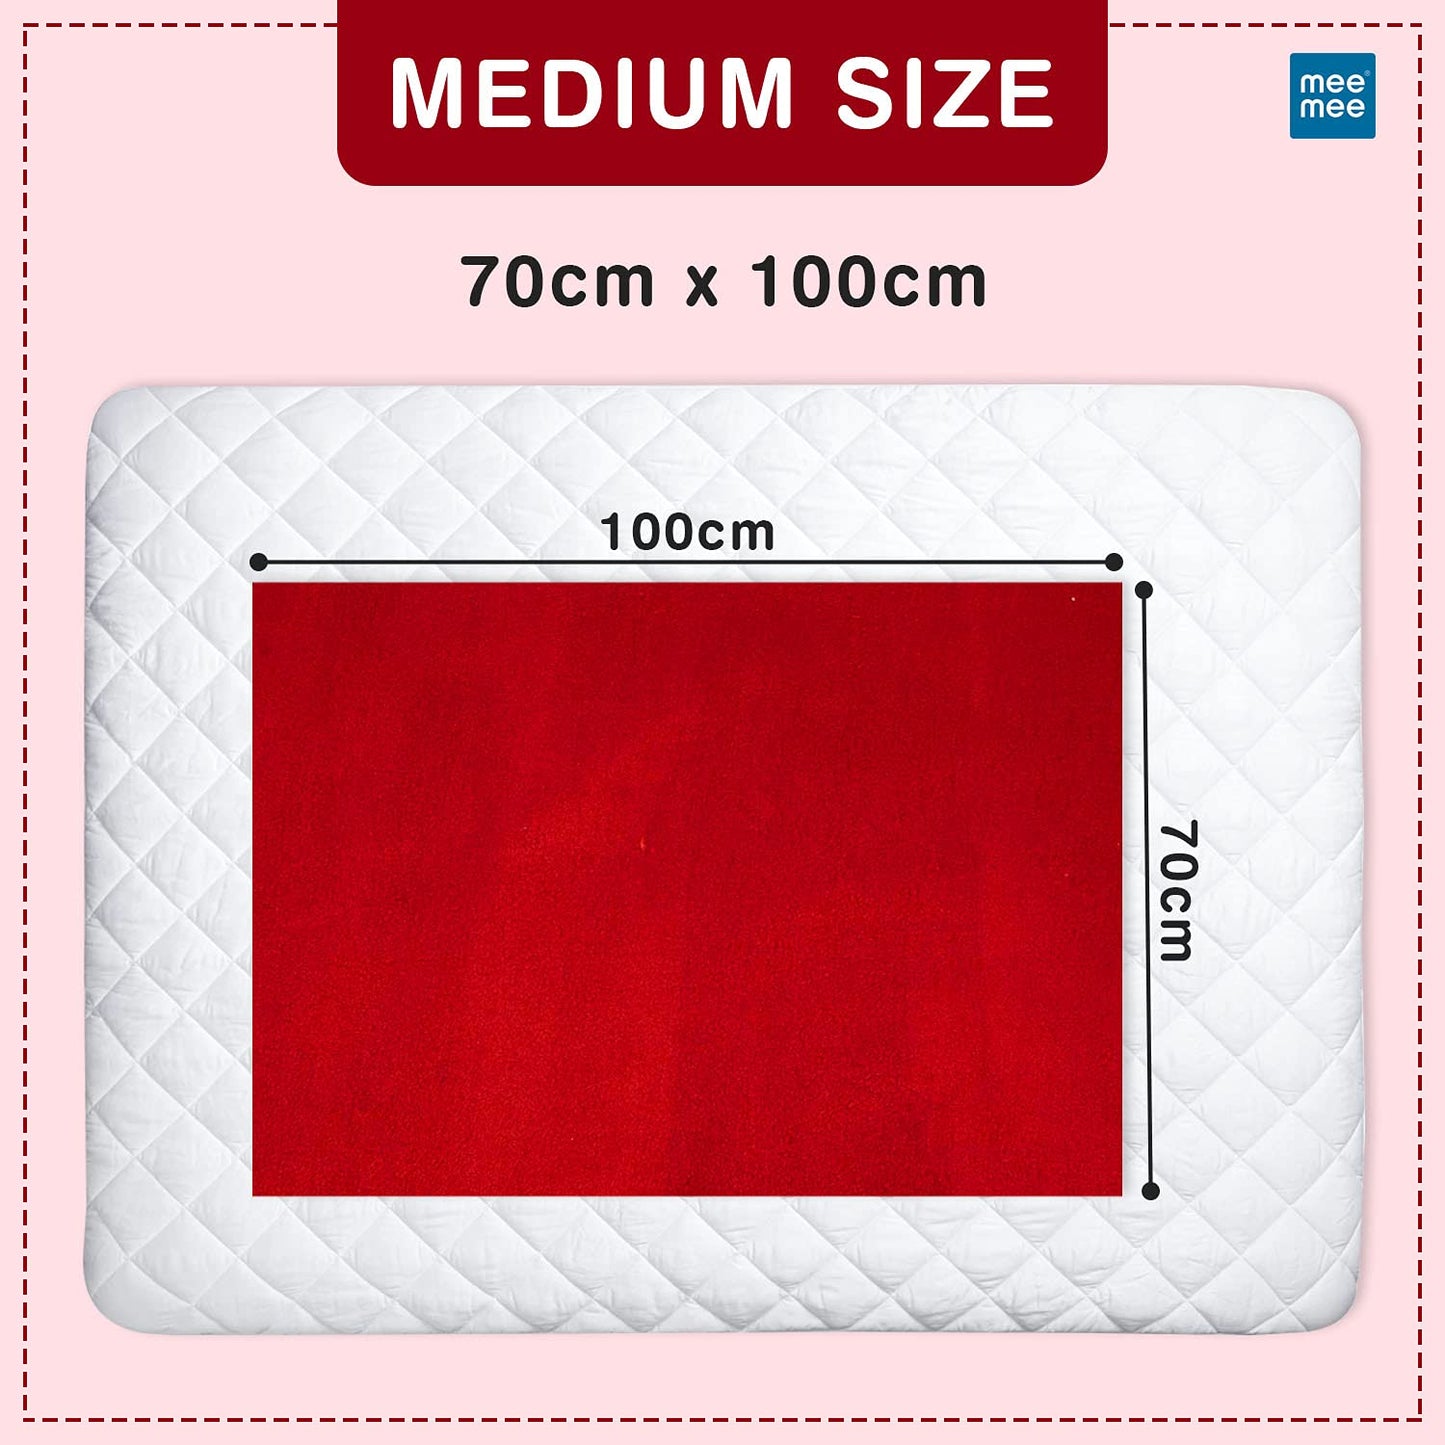 Mee Mee Reusable Water Proof/Extra Absorbent Cotton Mat(Maroon, Medium)